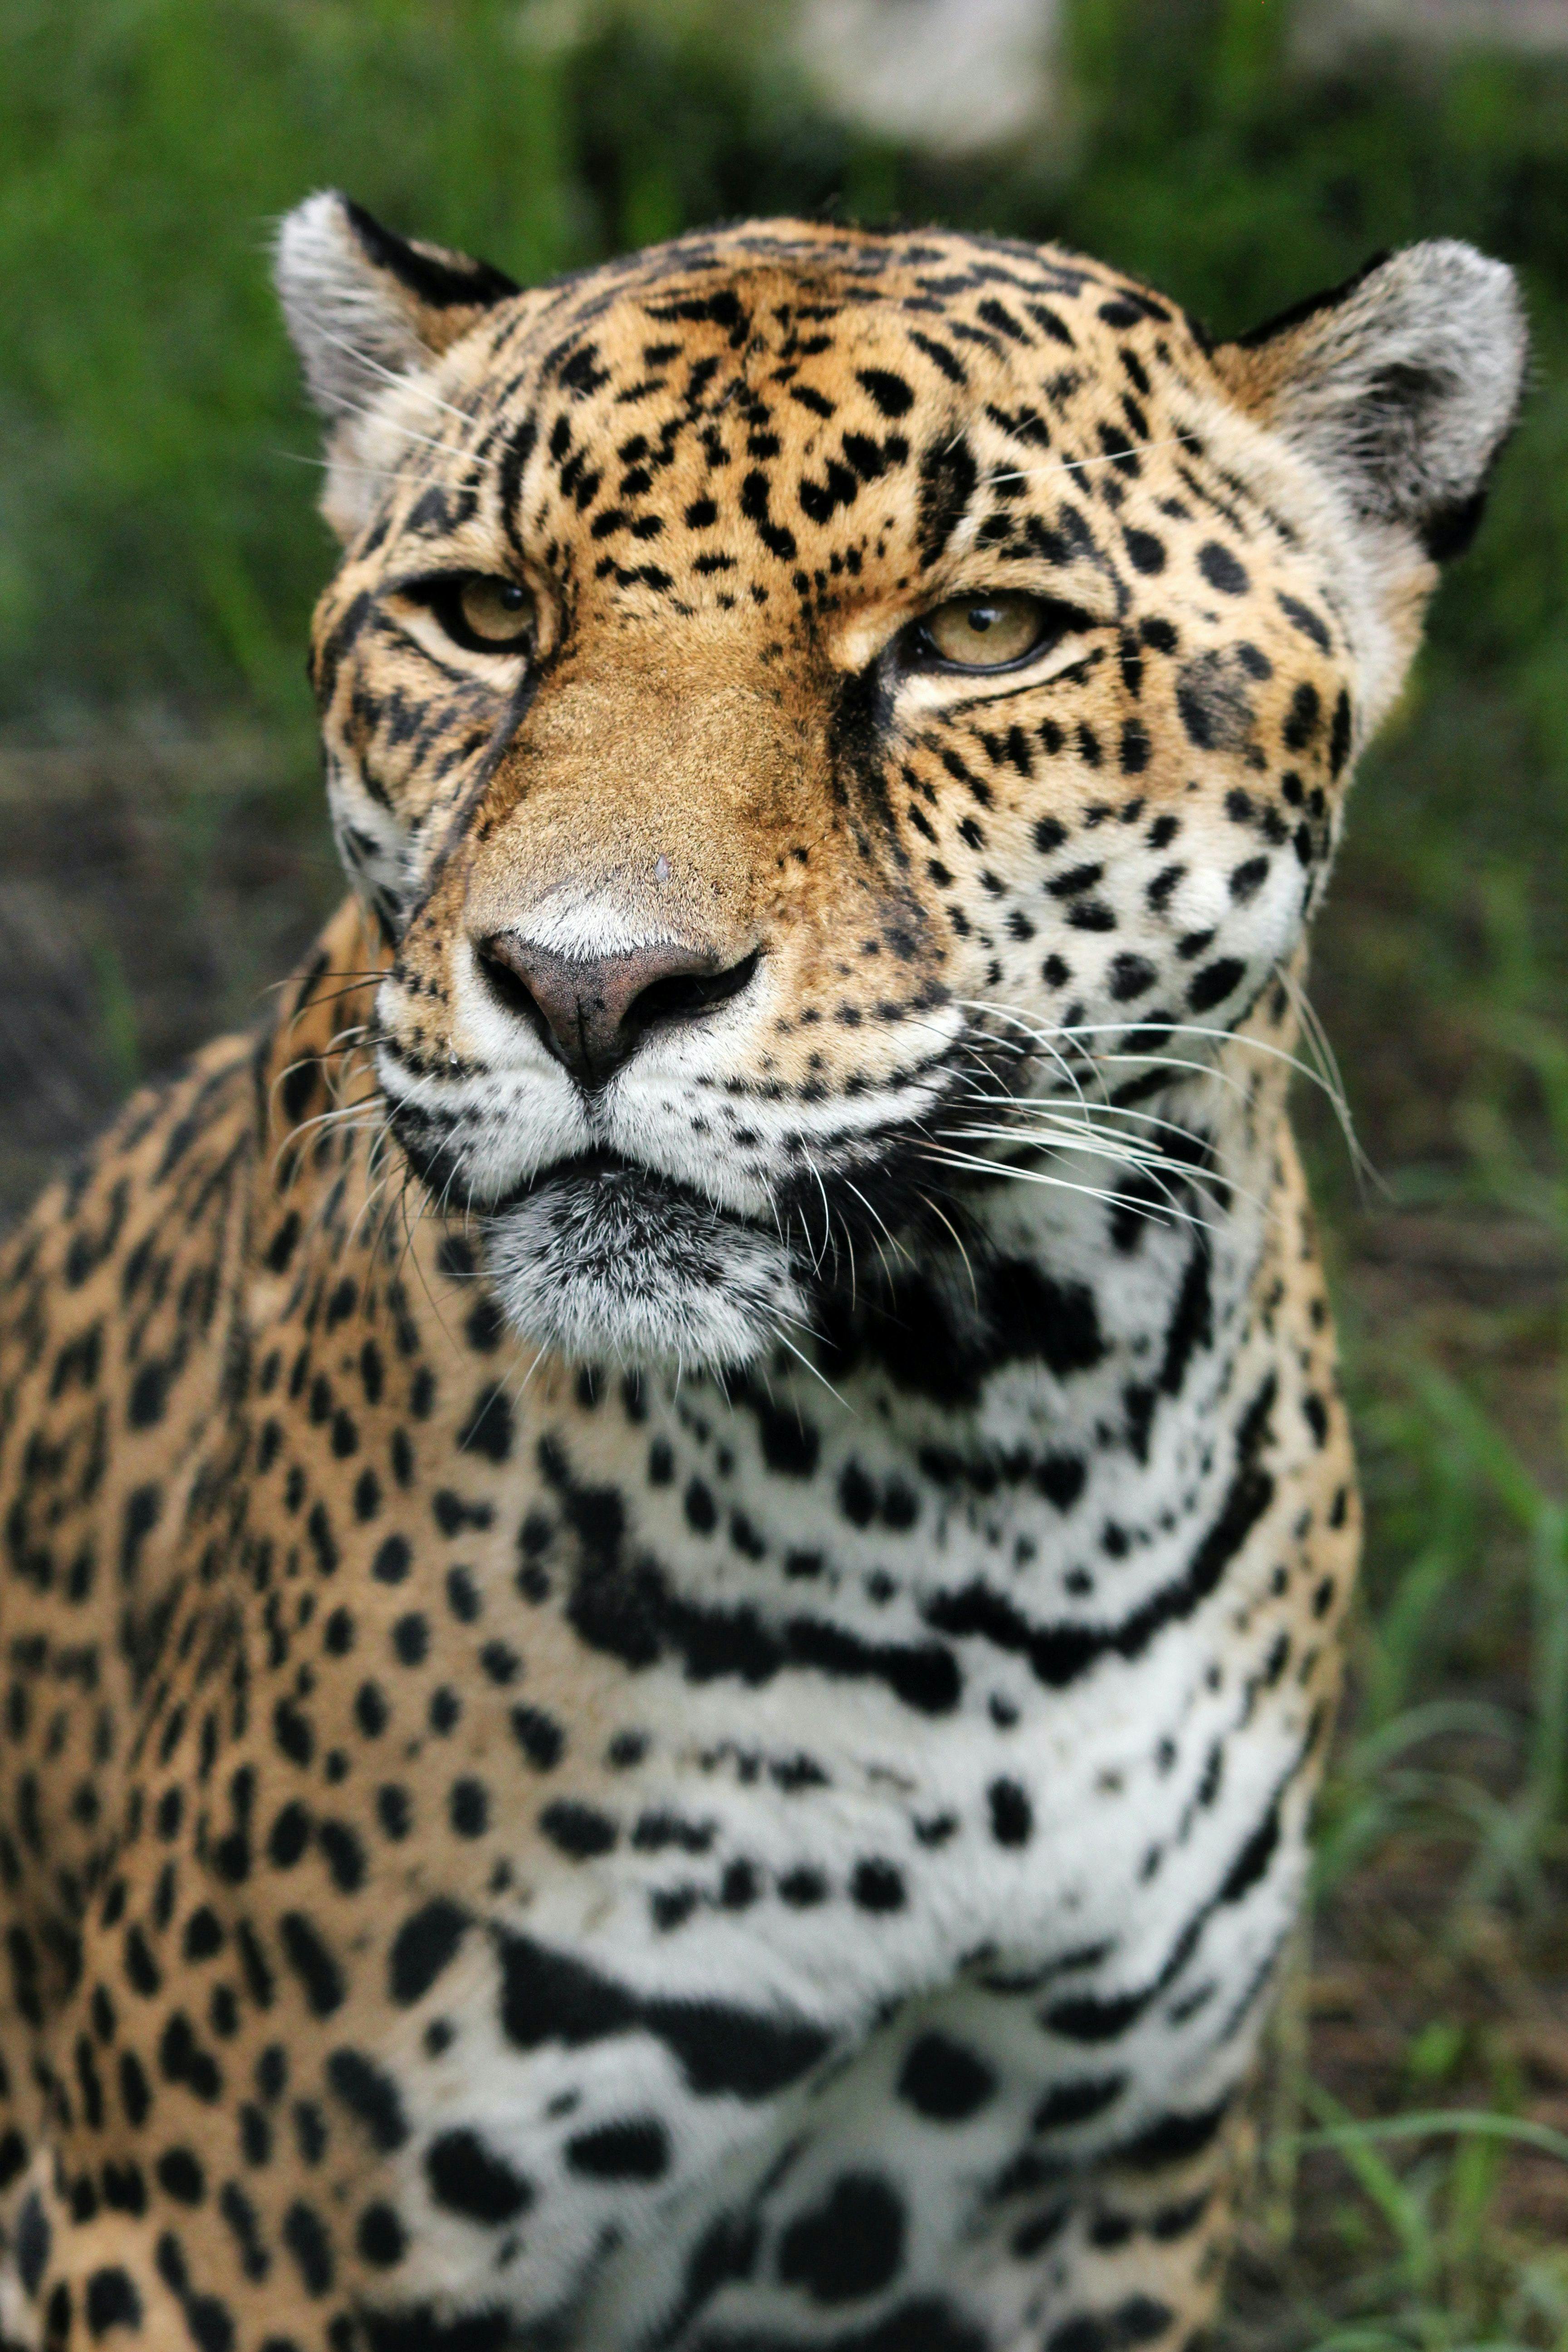 Jaguar in Costa Rica rainforest.